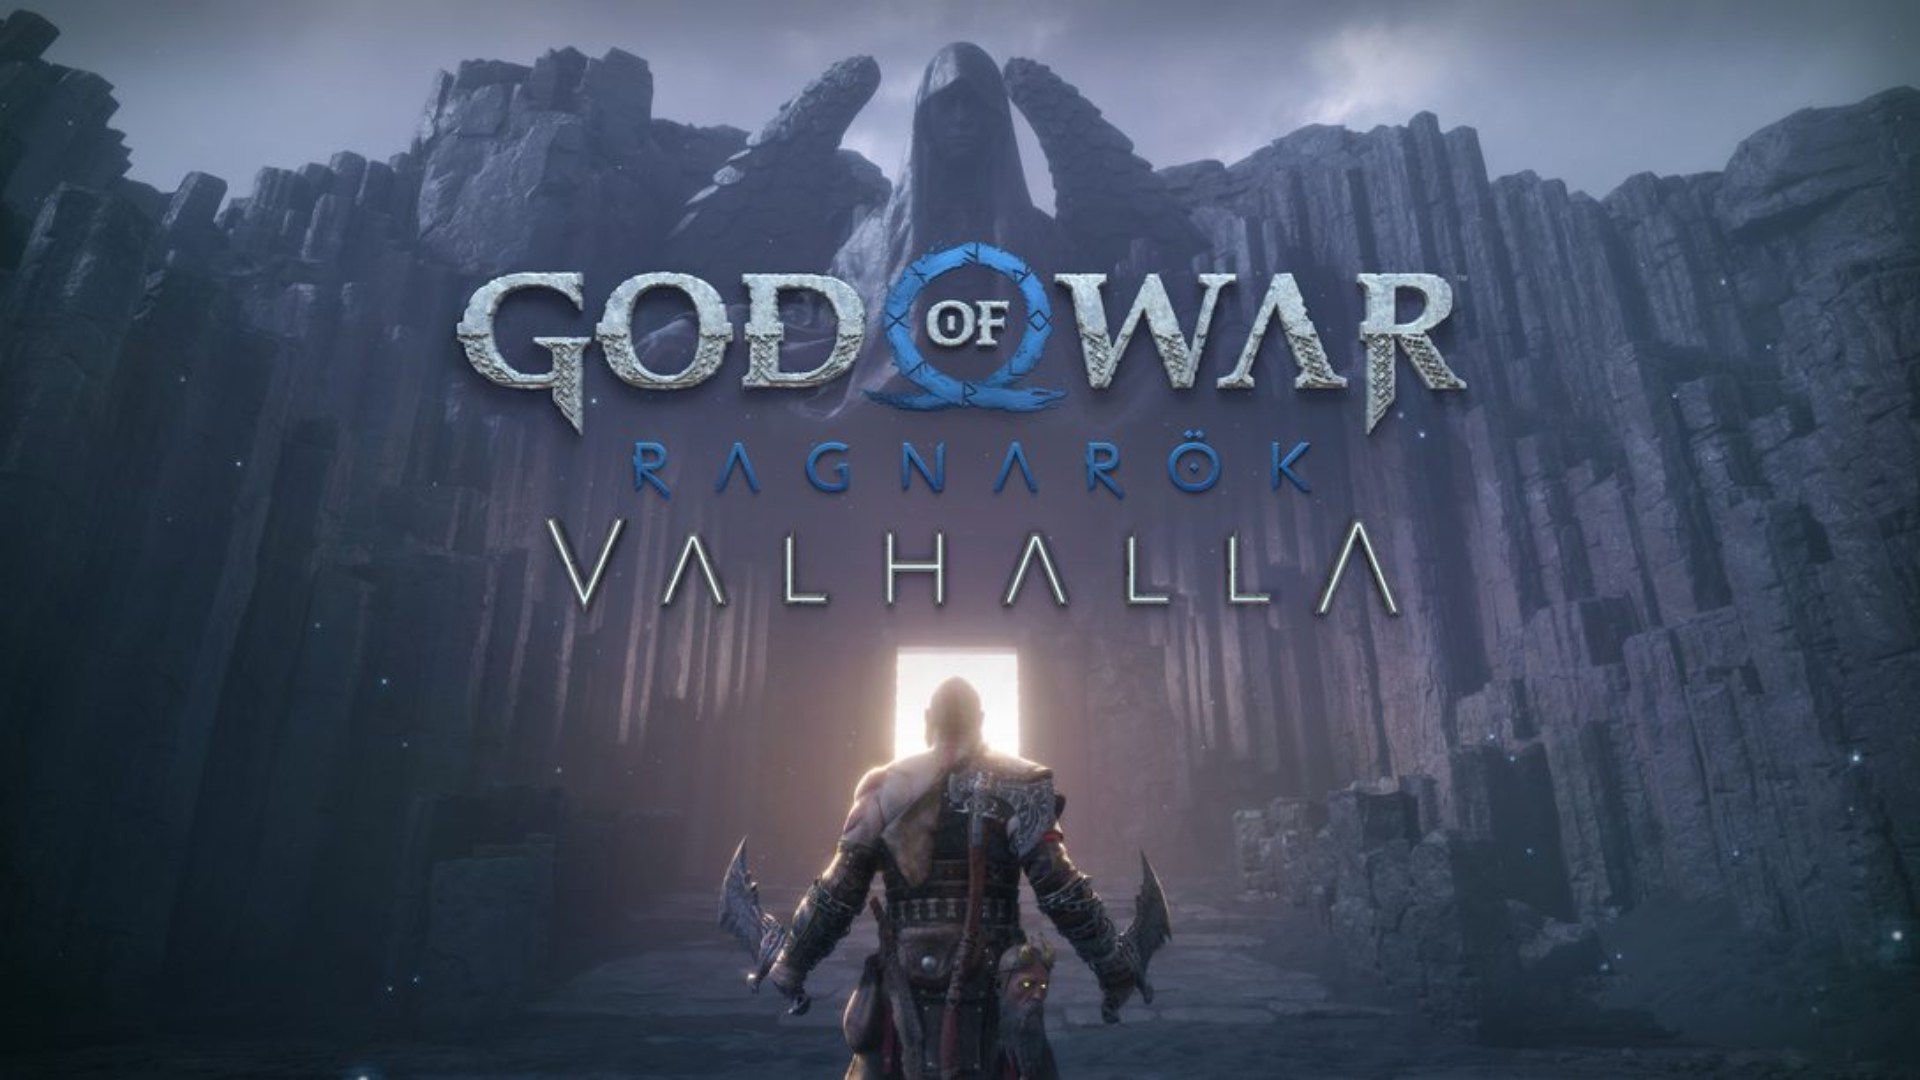 محتوای دانلودی رایگان Valhalla برای بازی God of War Ragnarok معرفی شد